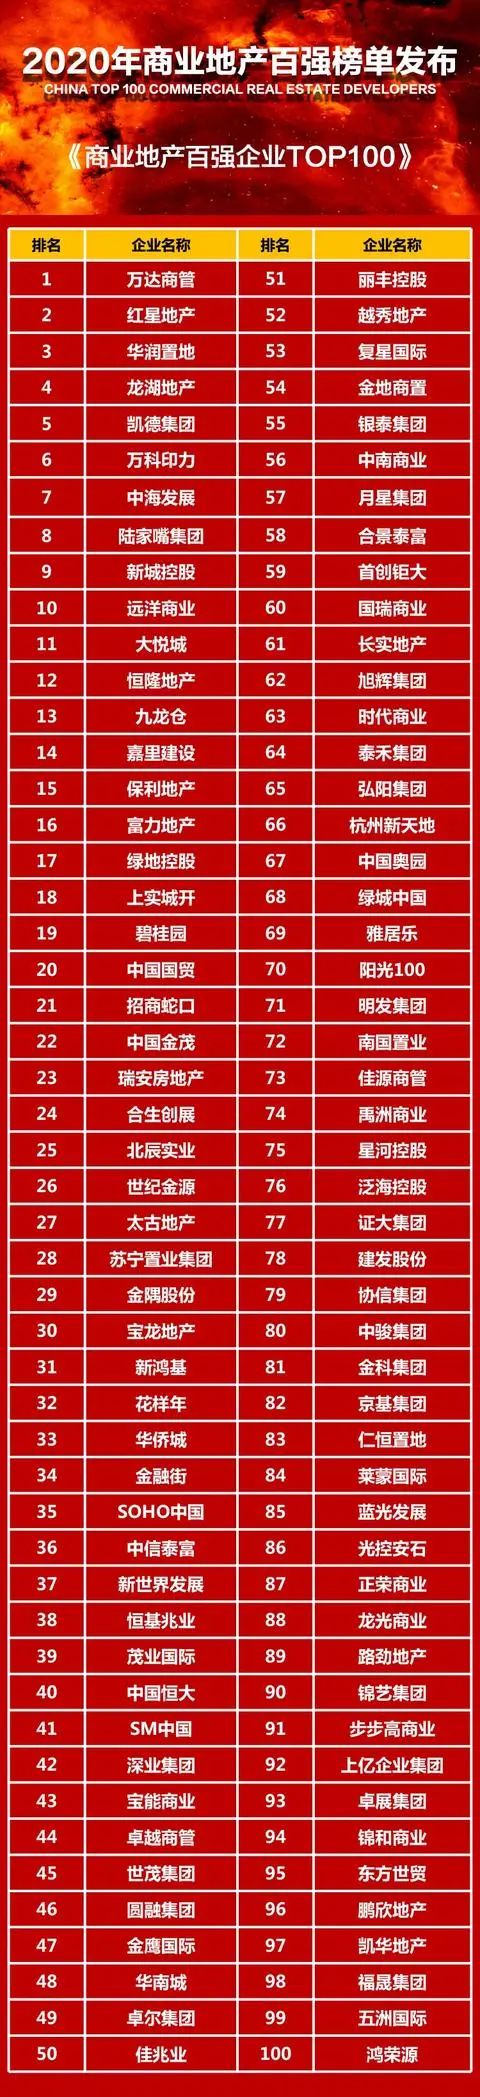 保集地产排名2020_2020年中国房地产500强排行榜